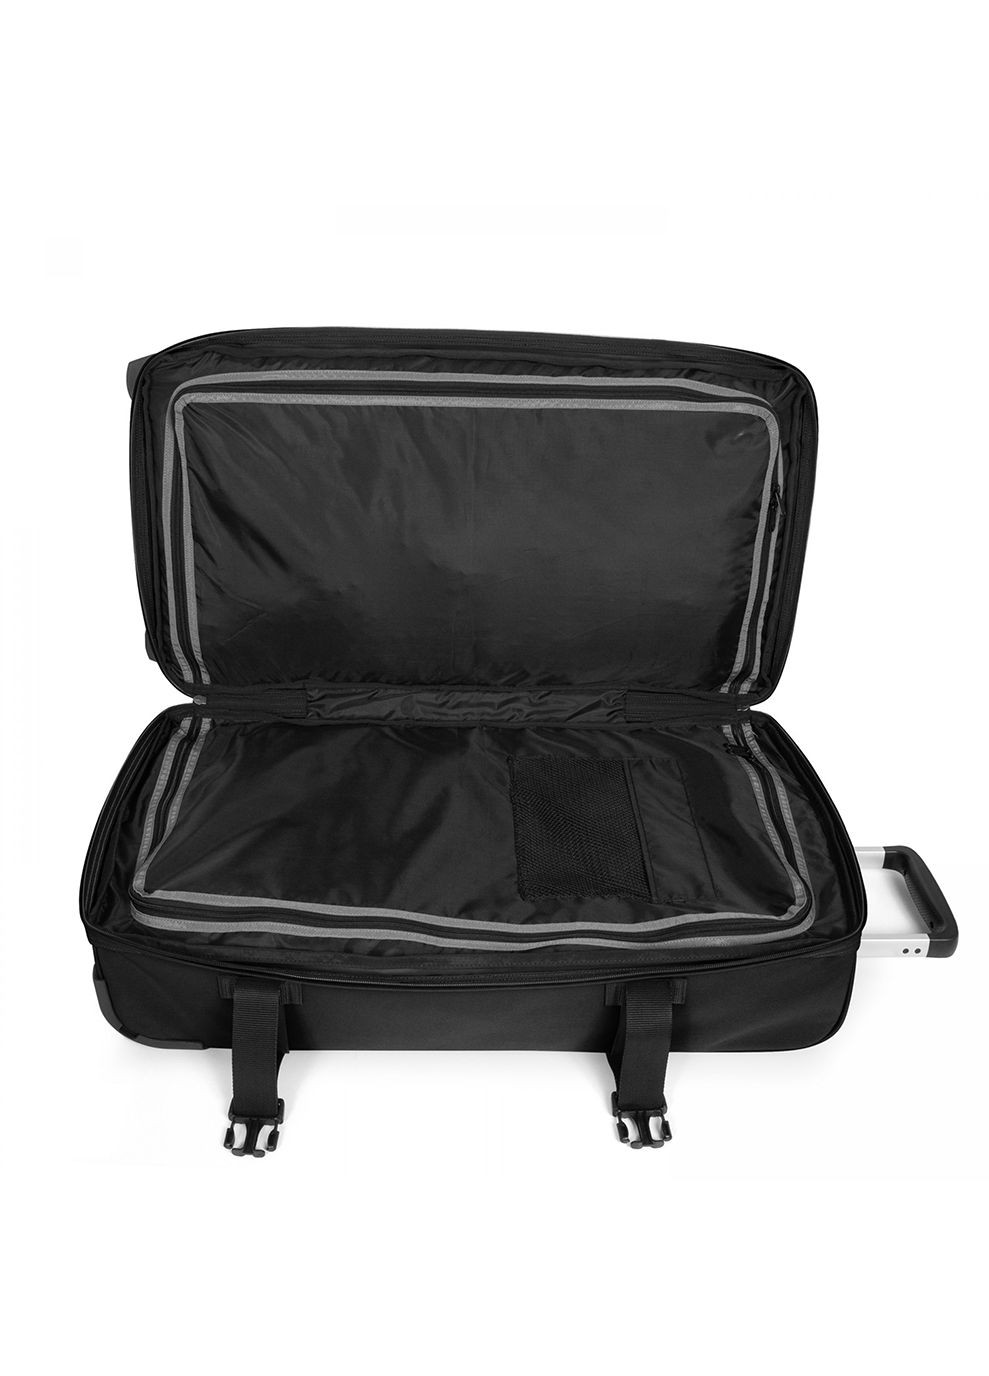 Большой чемодан TRANSIT'R L Черный Eastpak (268469603)